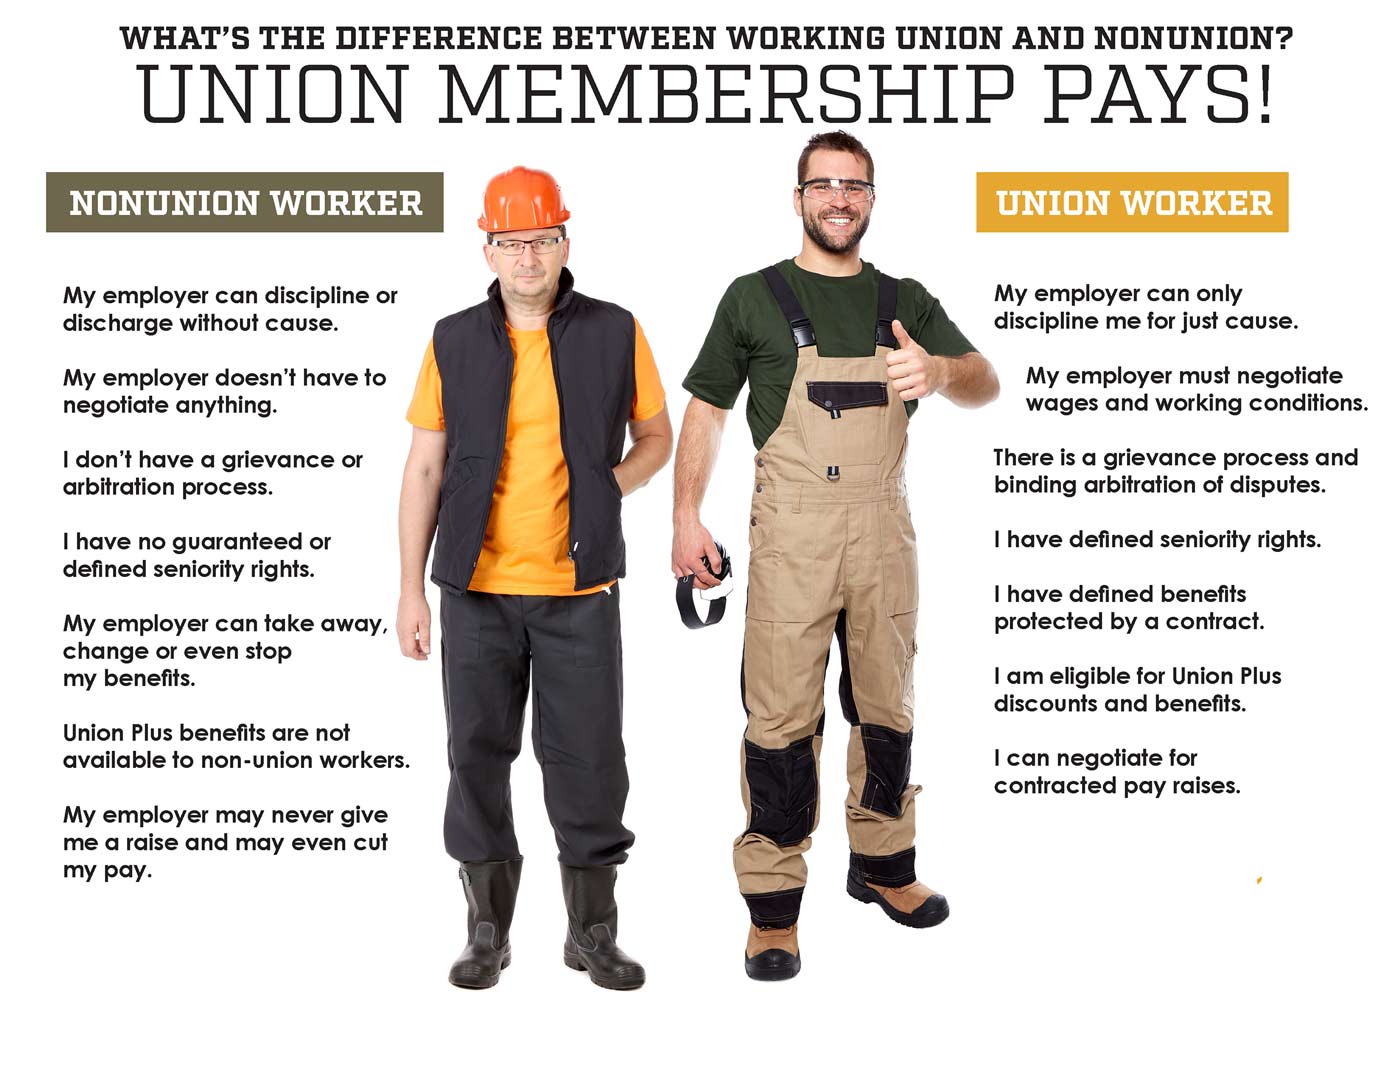 Union membership pays!